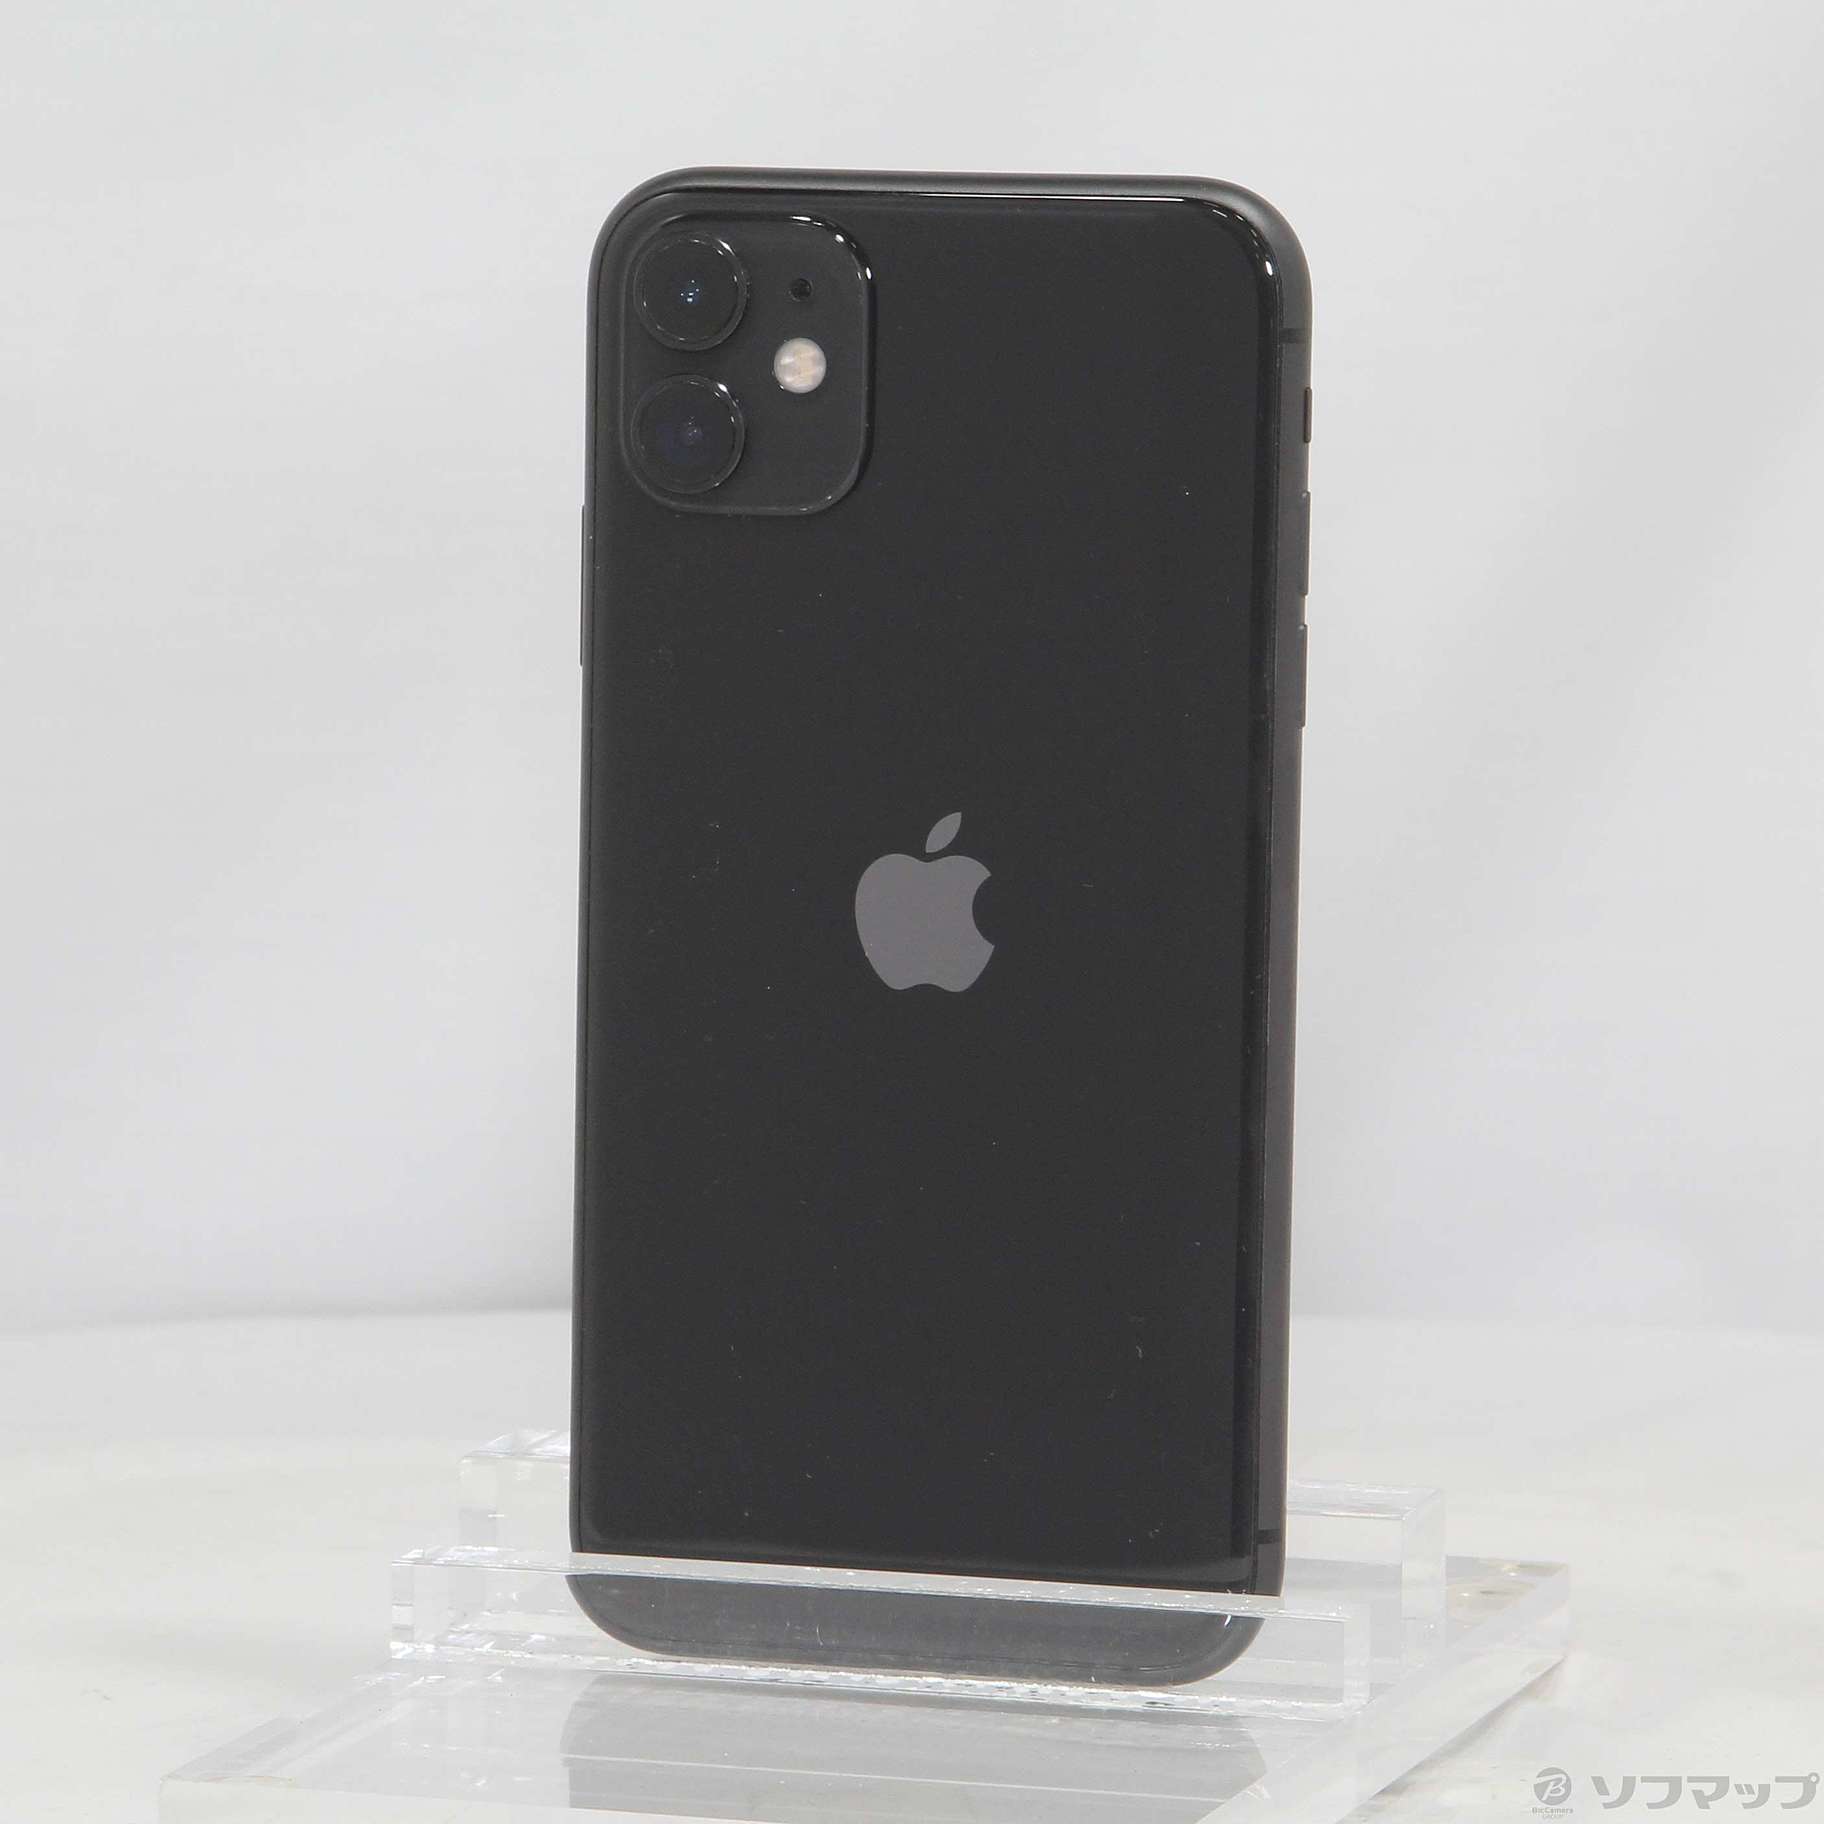 iPhone 11 128GB black Simフリー